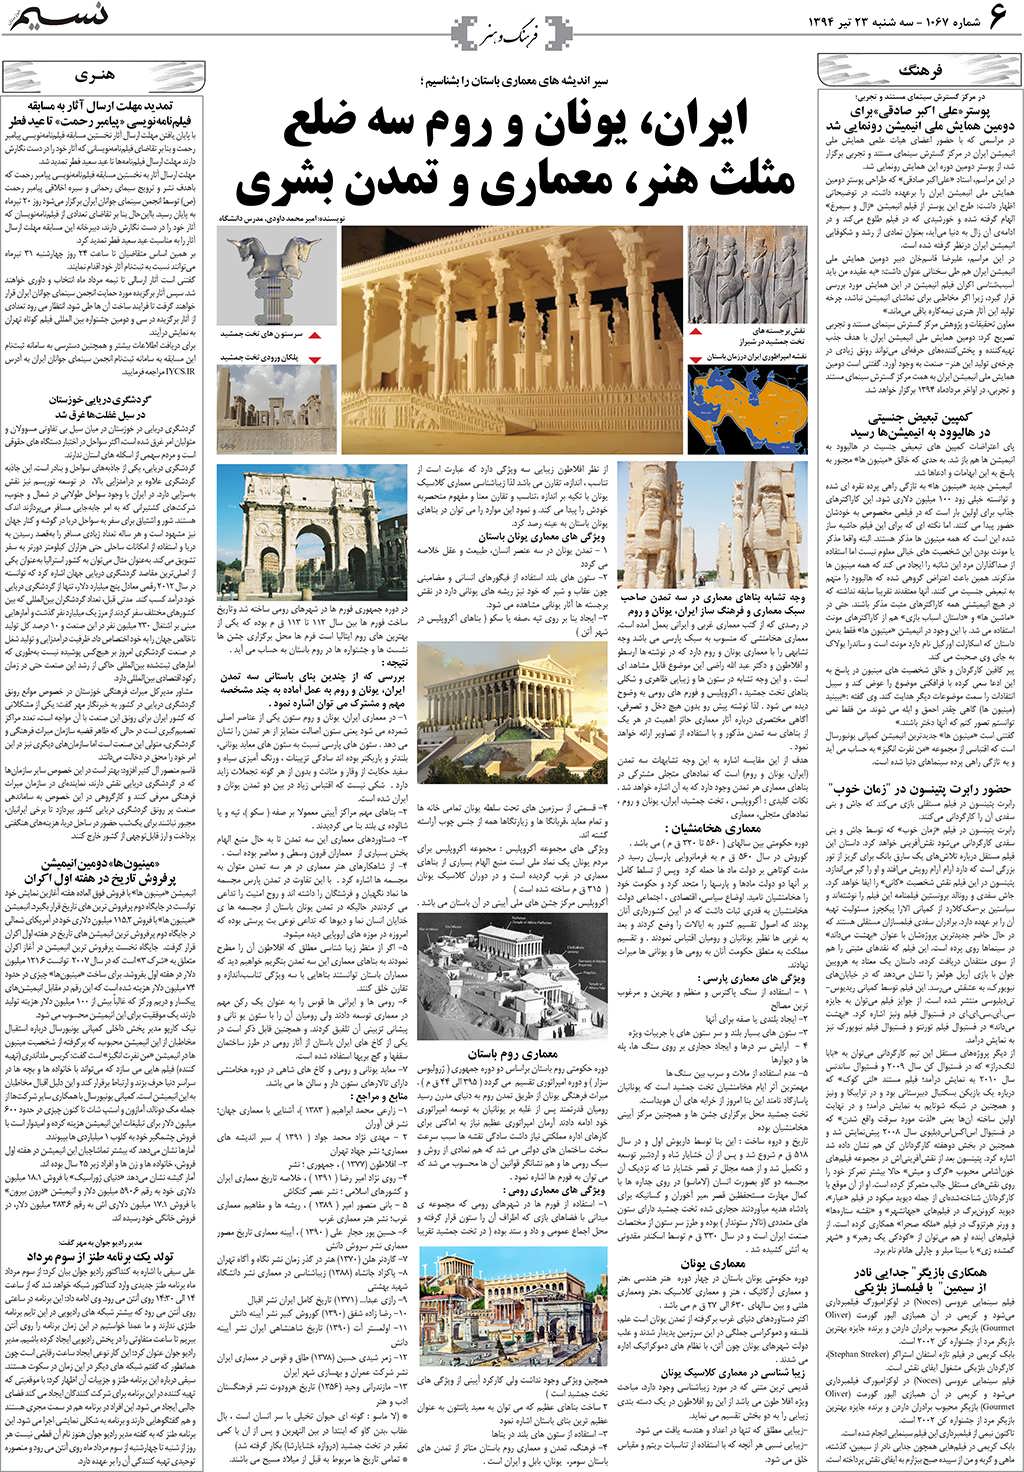 صفحه فرهنگ و هنر روزنامه نسیم شماره 1067